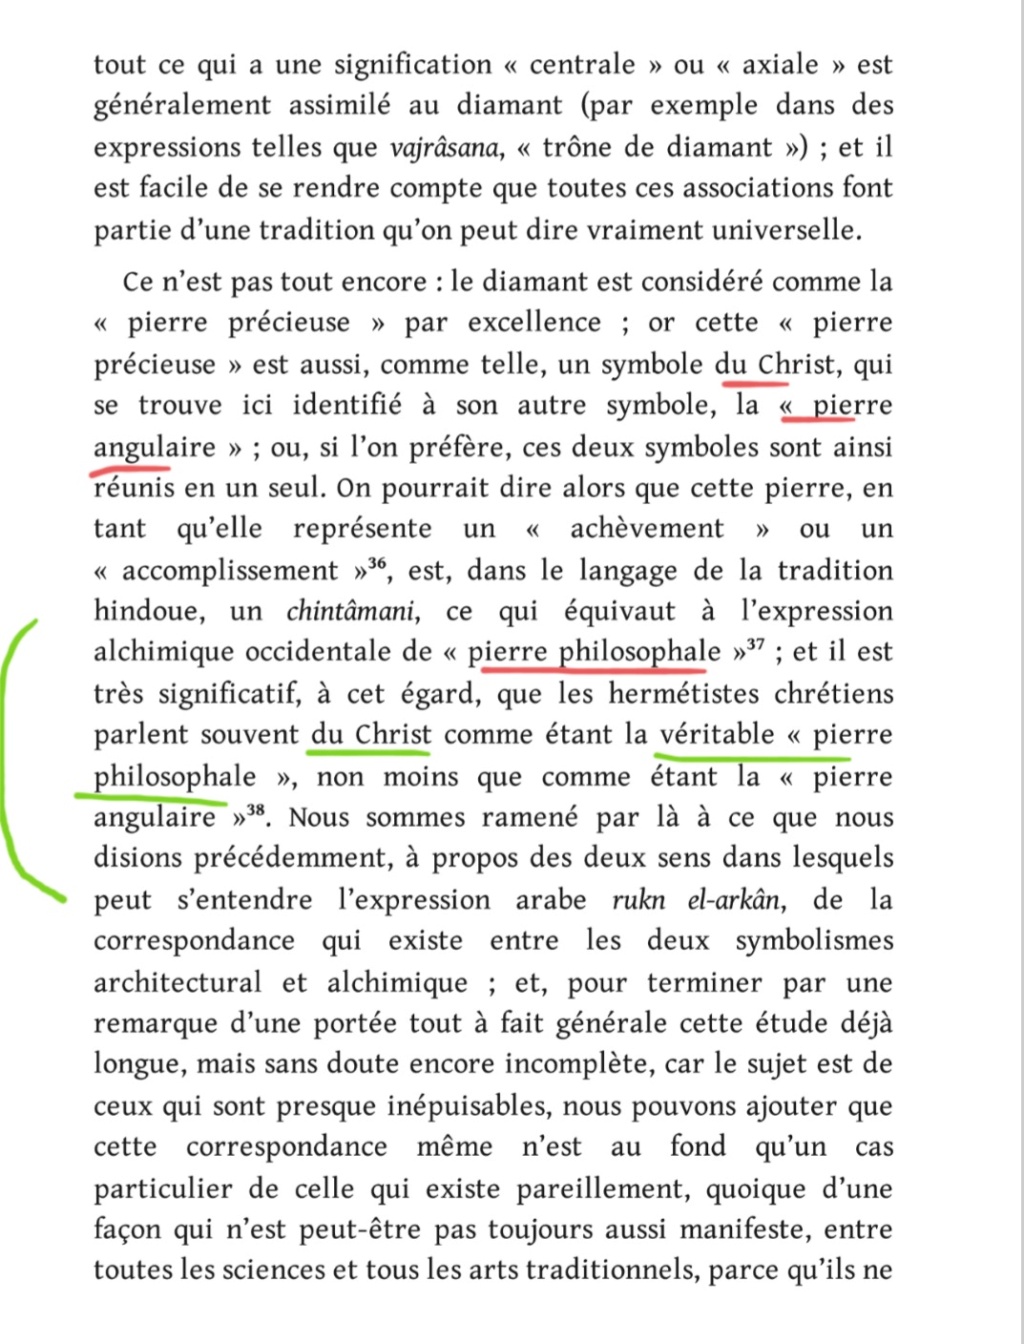 La franc-maçonnerie, la Gnose et le gnosticisme.  - Page 5 Scree532